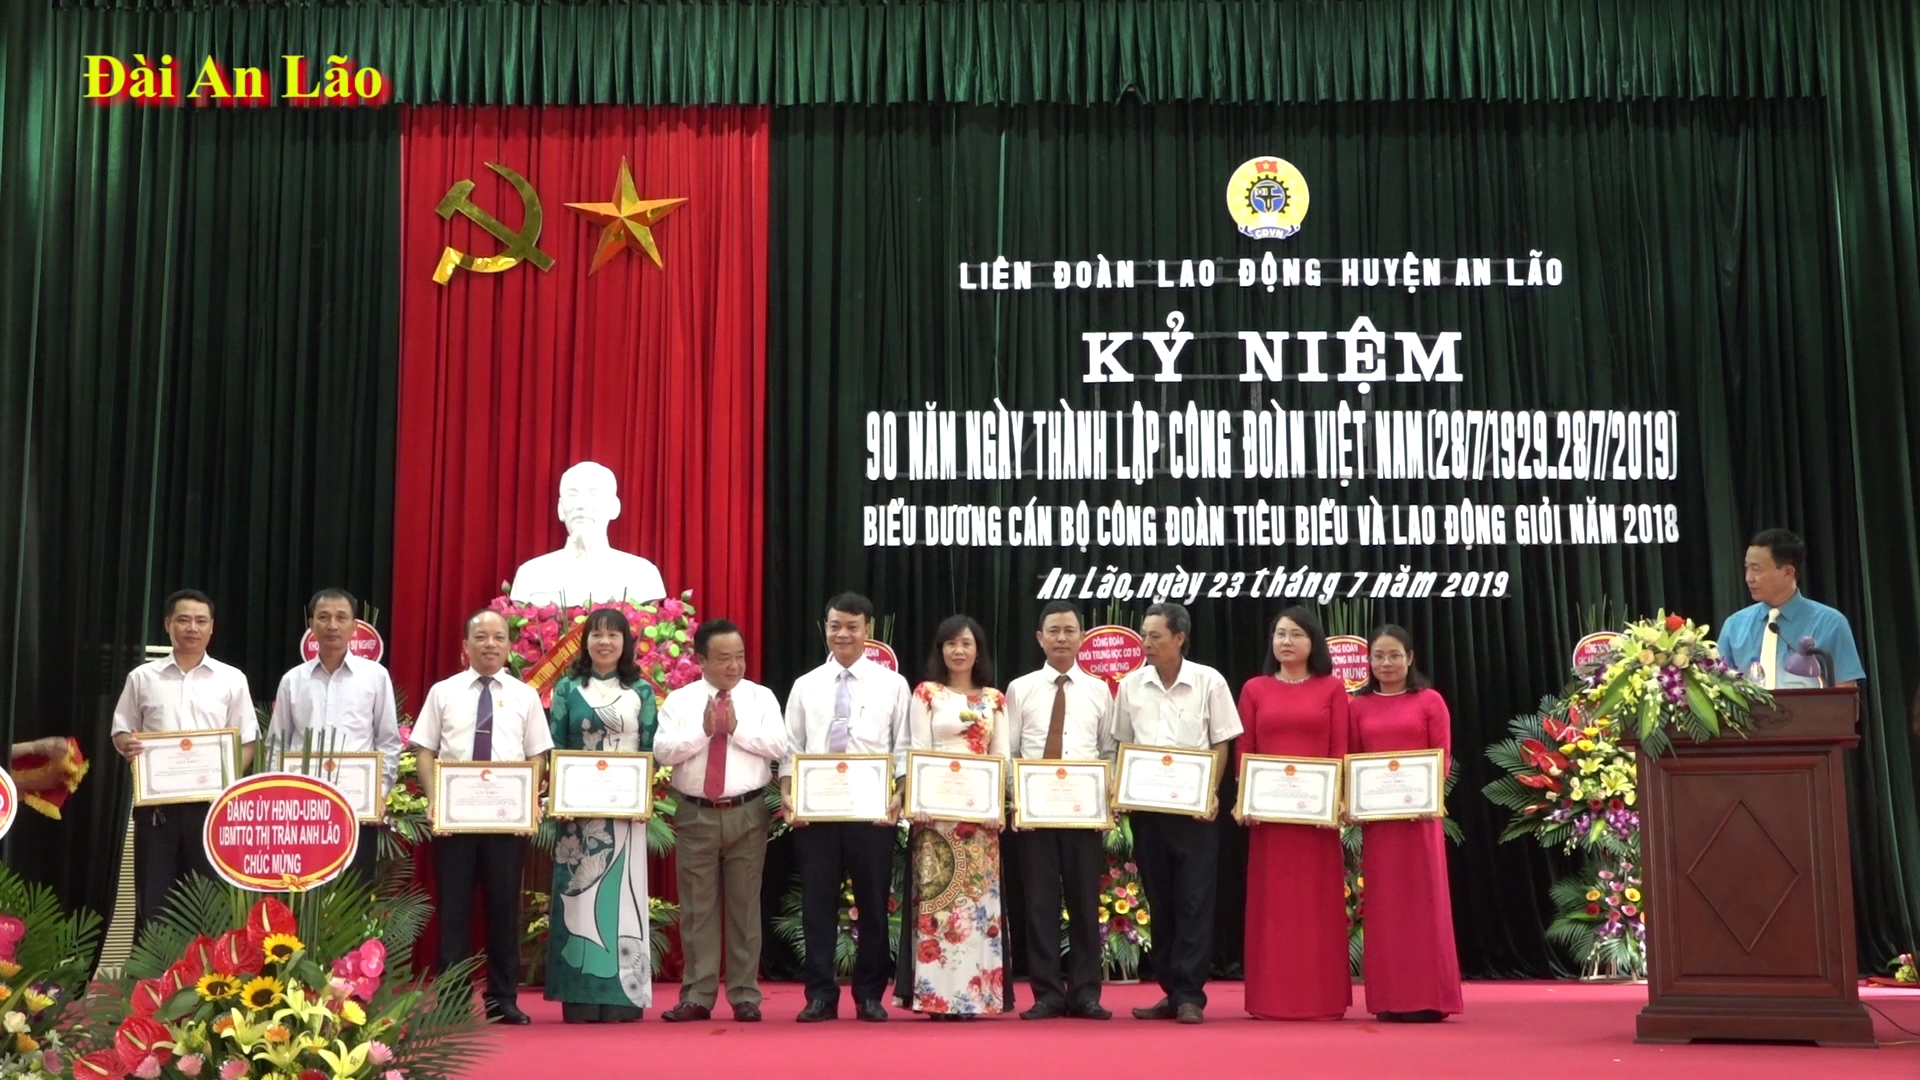 Liên đoàn lao động huyện An Lão kỷ niệm 90 năm ngày thành lập công đoàn Việt Nam và biểu dương cán bộ công đoàn tiêu biểu năm 2018